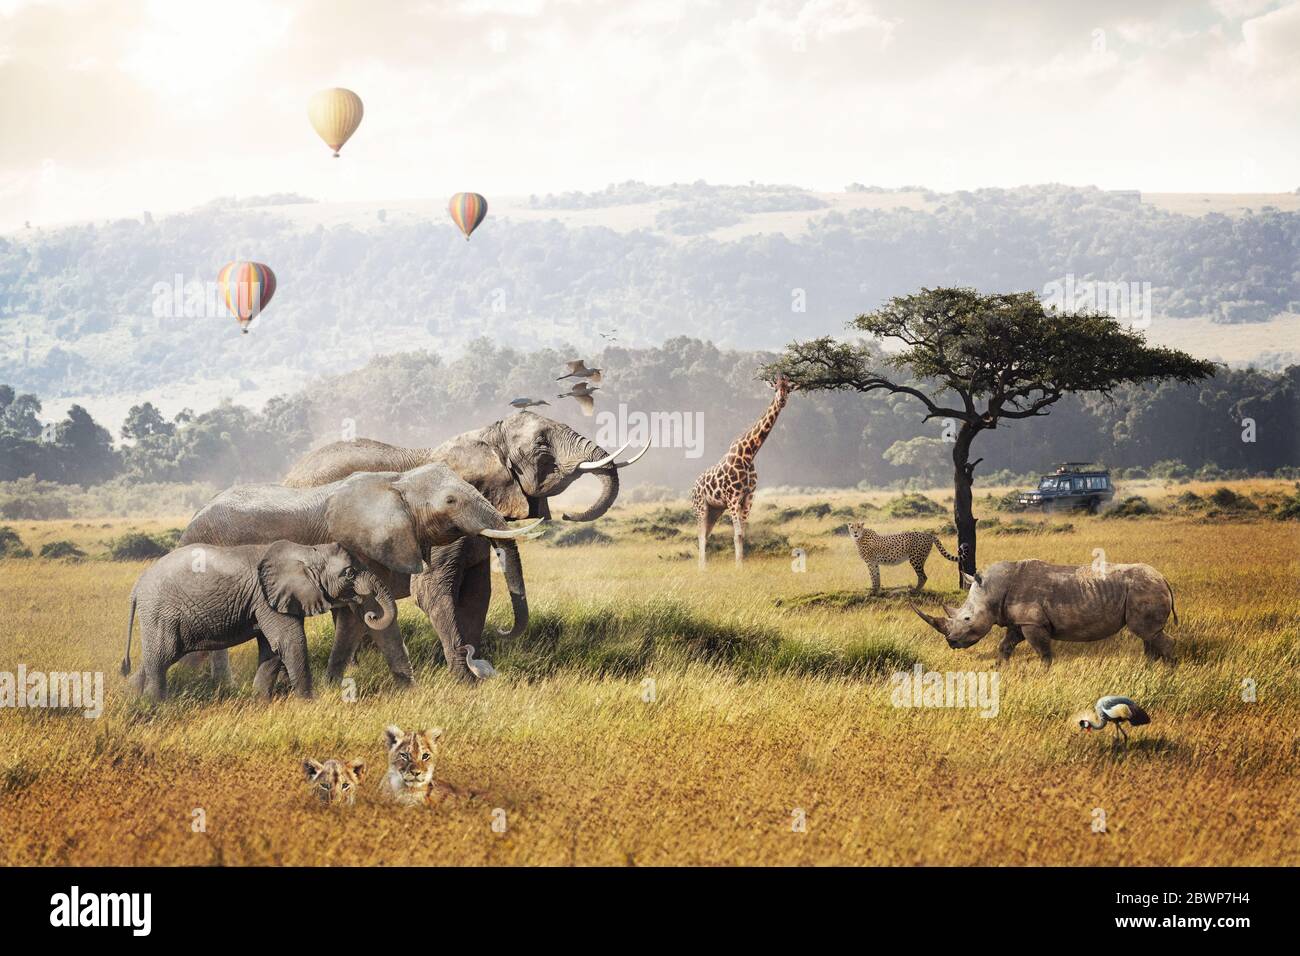 Kenia Afrika Safari Traumreise Szene mit Wildtieren Tiere zusammen in einem Grasland Feld mit Heißluftballons und Wildfahrt Touristenfahrzeug. Stockfoto